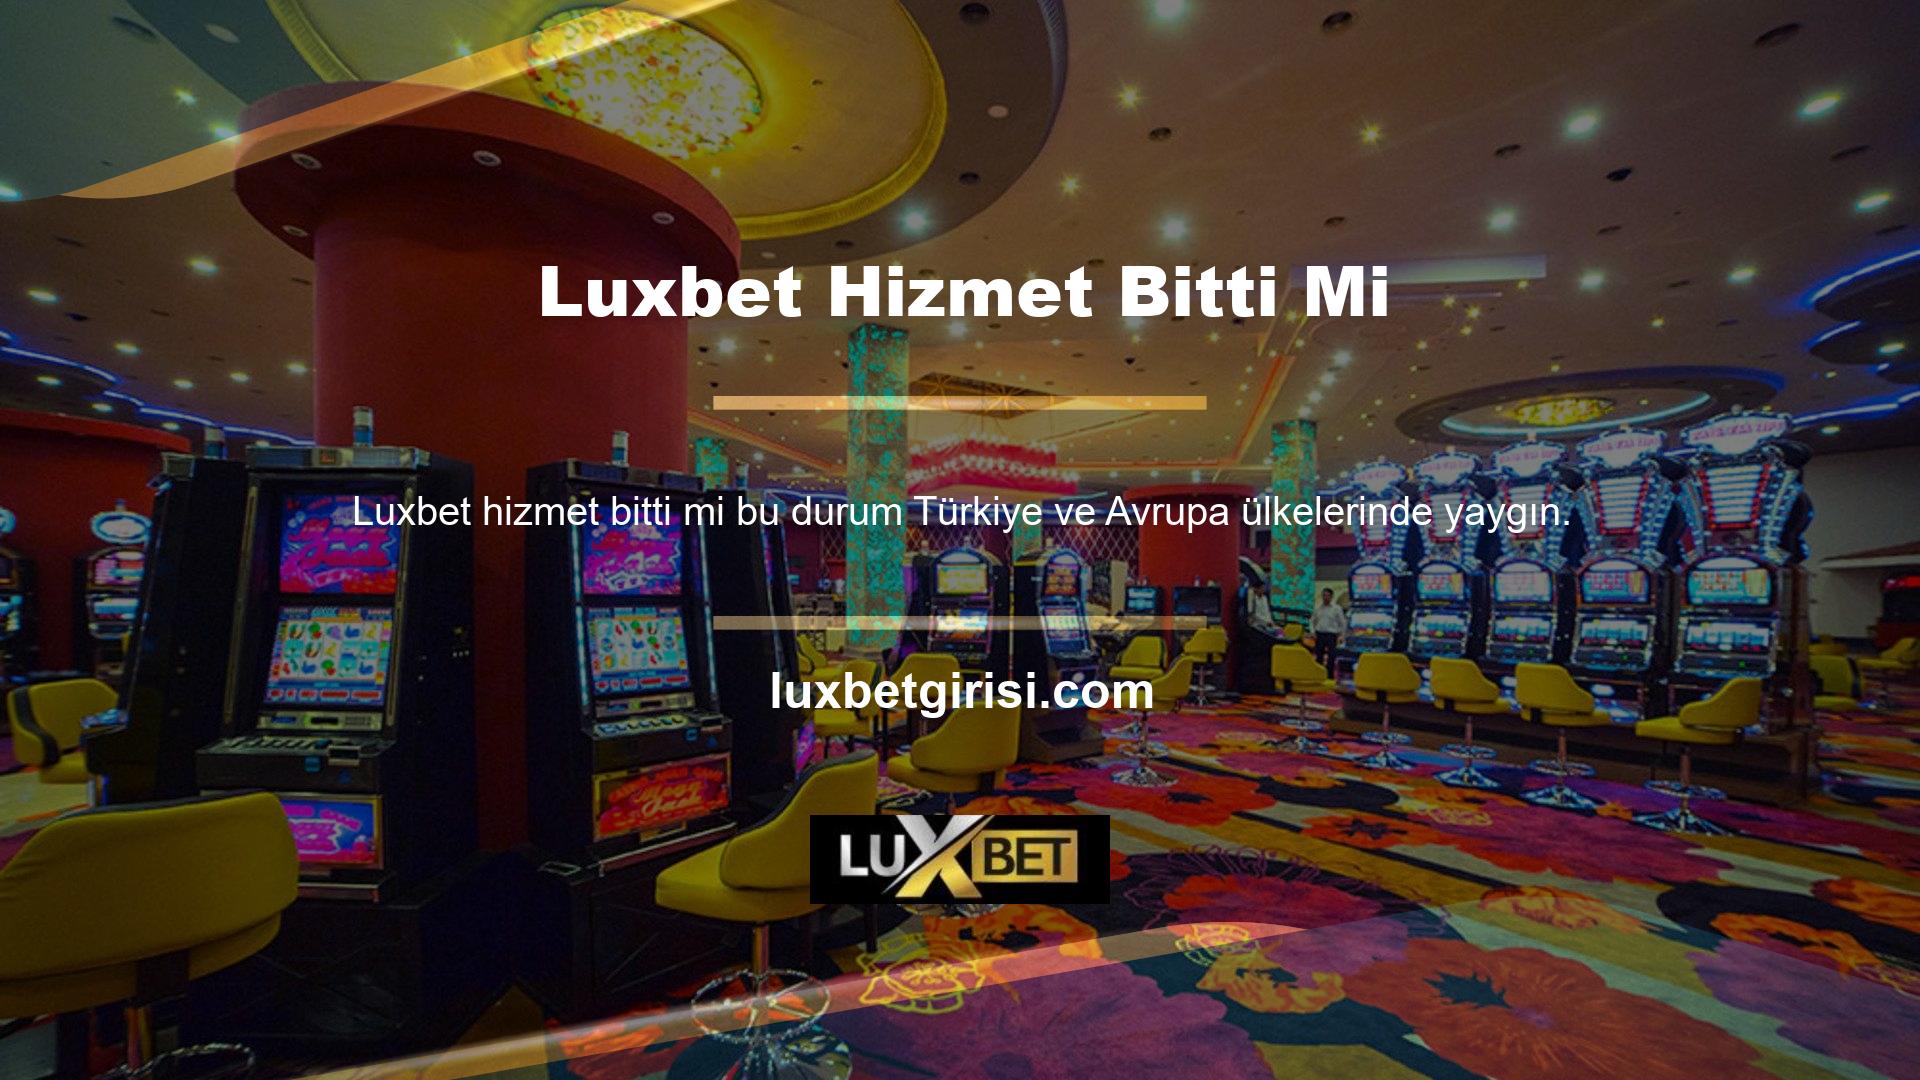 Çevrimiçi casino siteleri dünyanın her yerinde bulunmaktadır